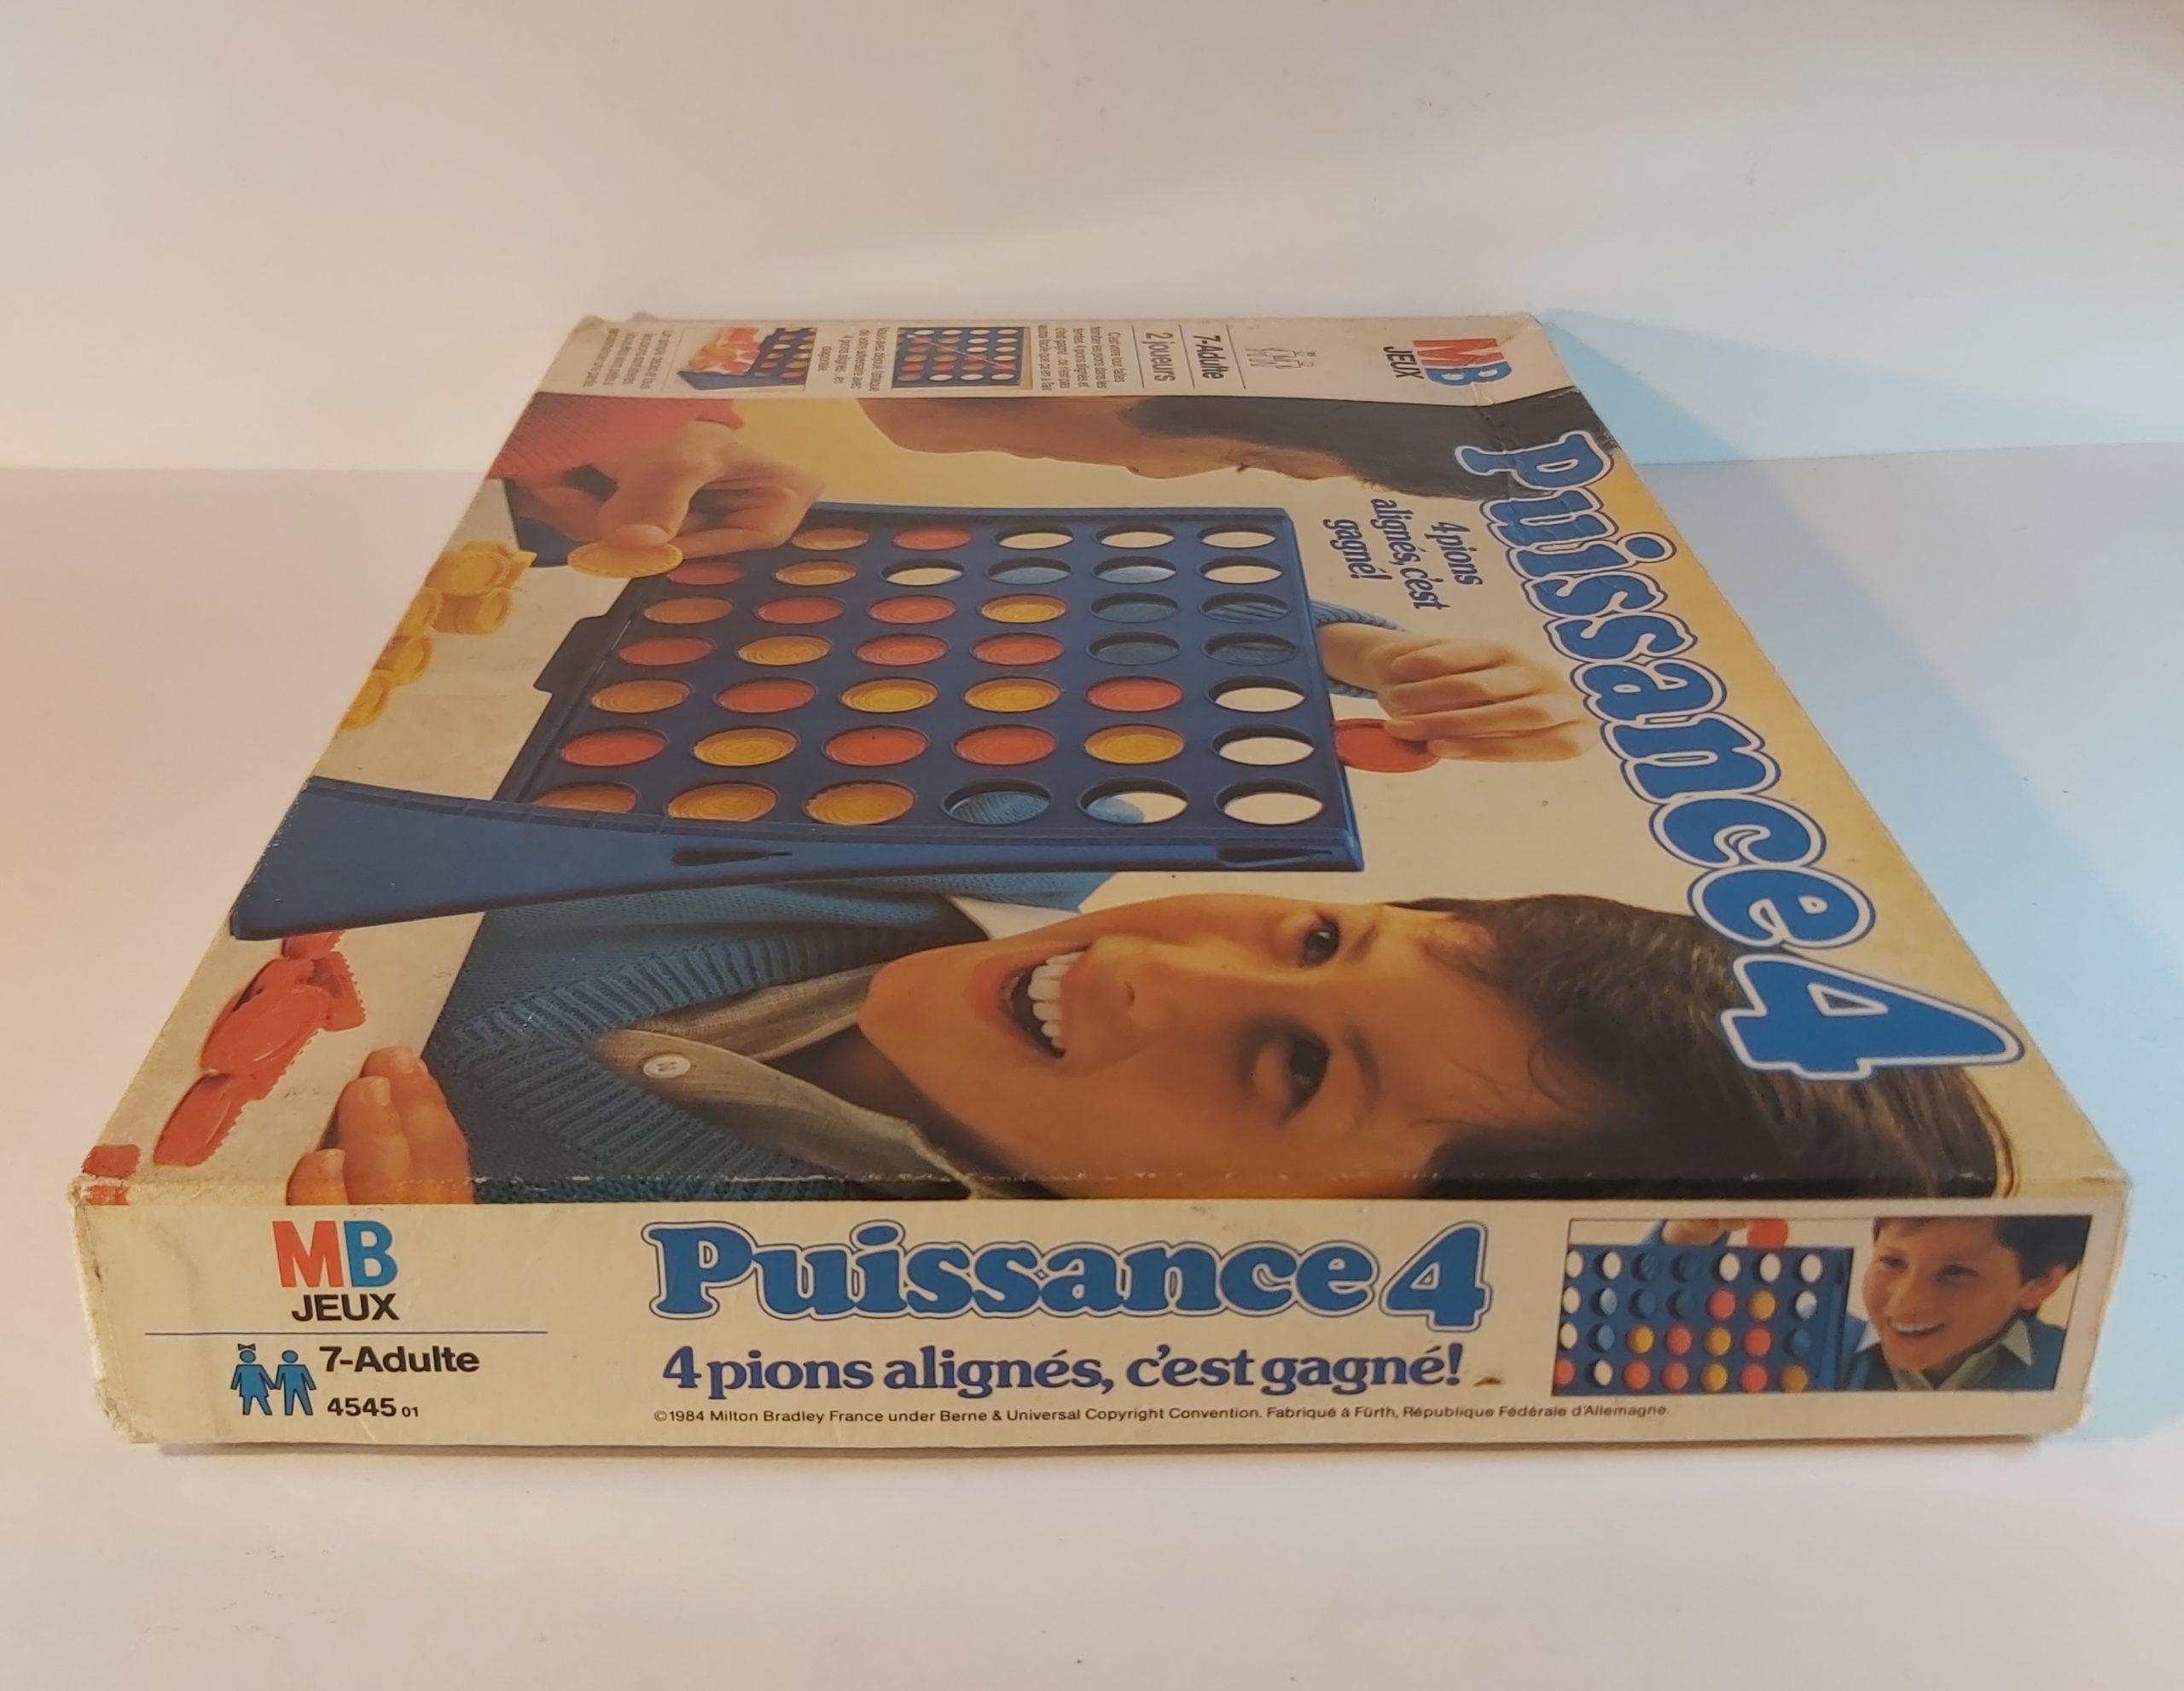 Nouveau Puissance 4 - MB Jeux - édition 2004 - Ludessimo - jeux de